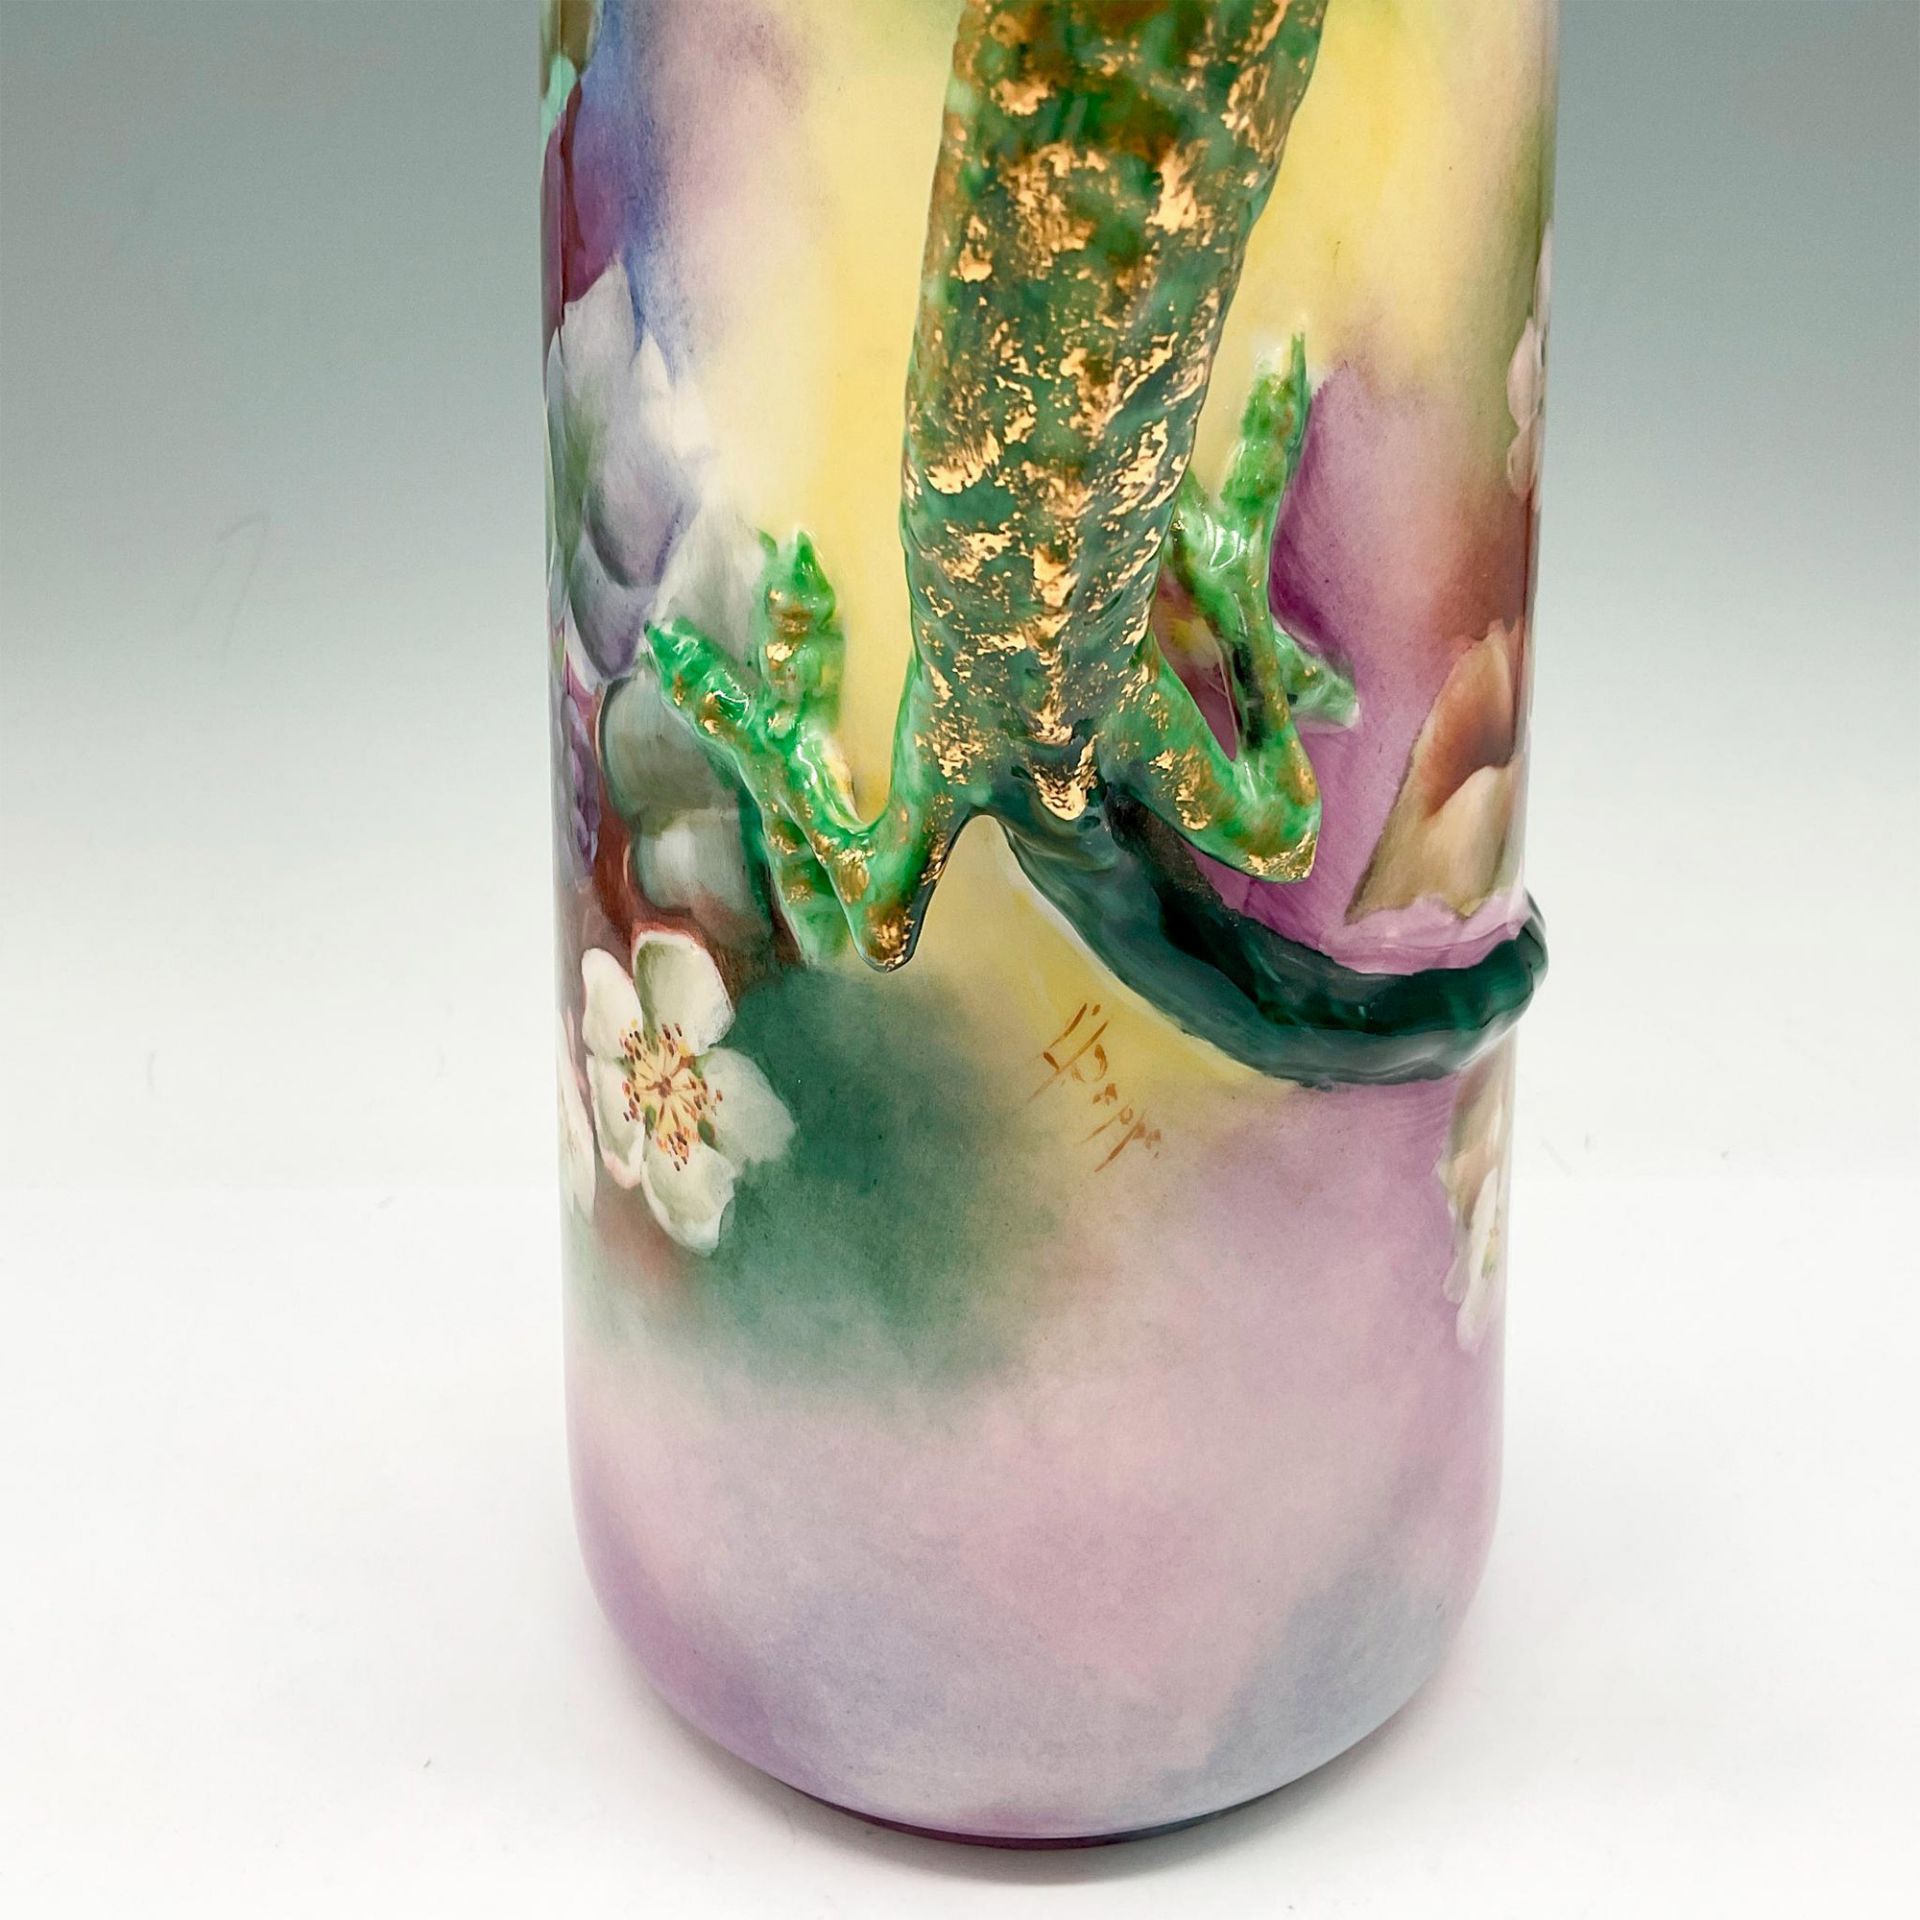 Willets Belleek Porcelain Dragon Handled Tankard - Image 3 of 4